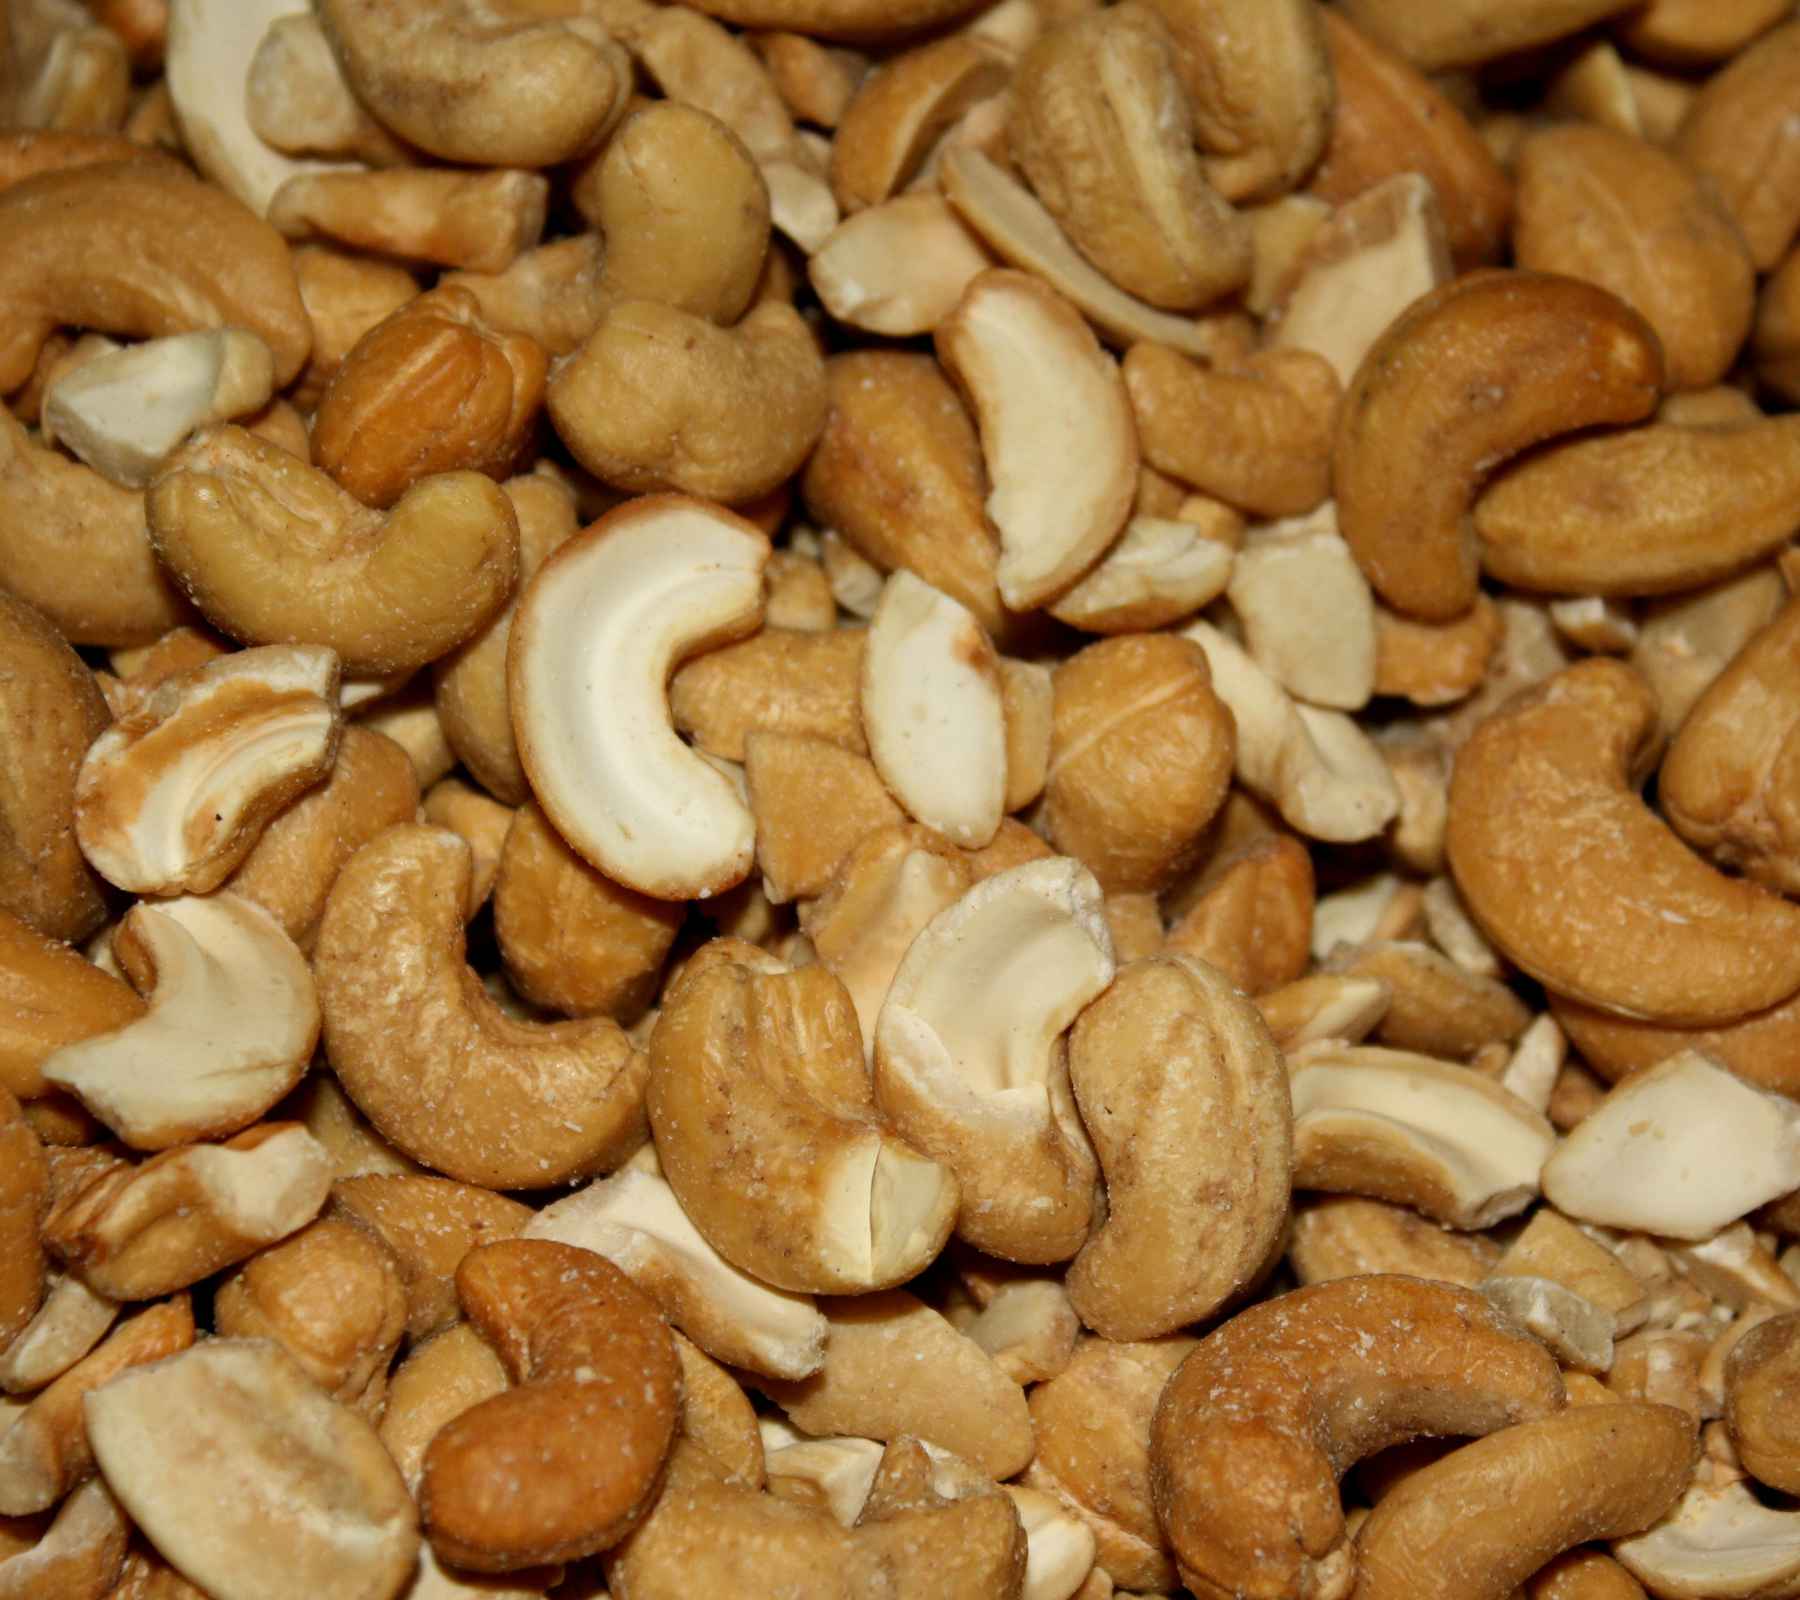 Roasted Cashew Nuts Background 1800x1600 Background Image ...